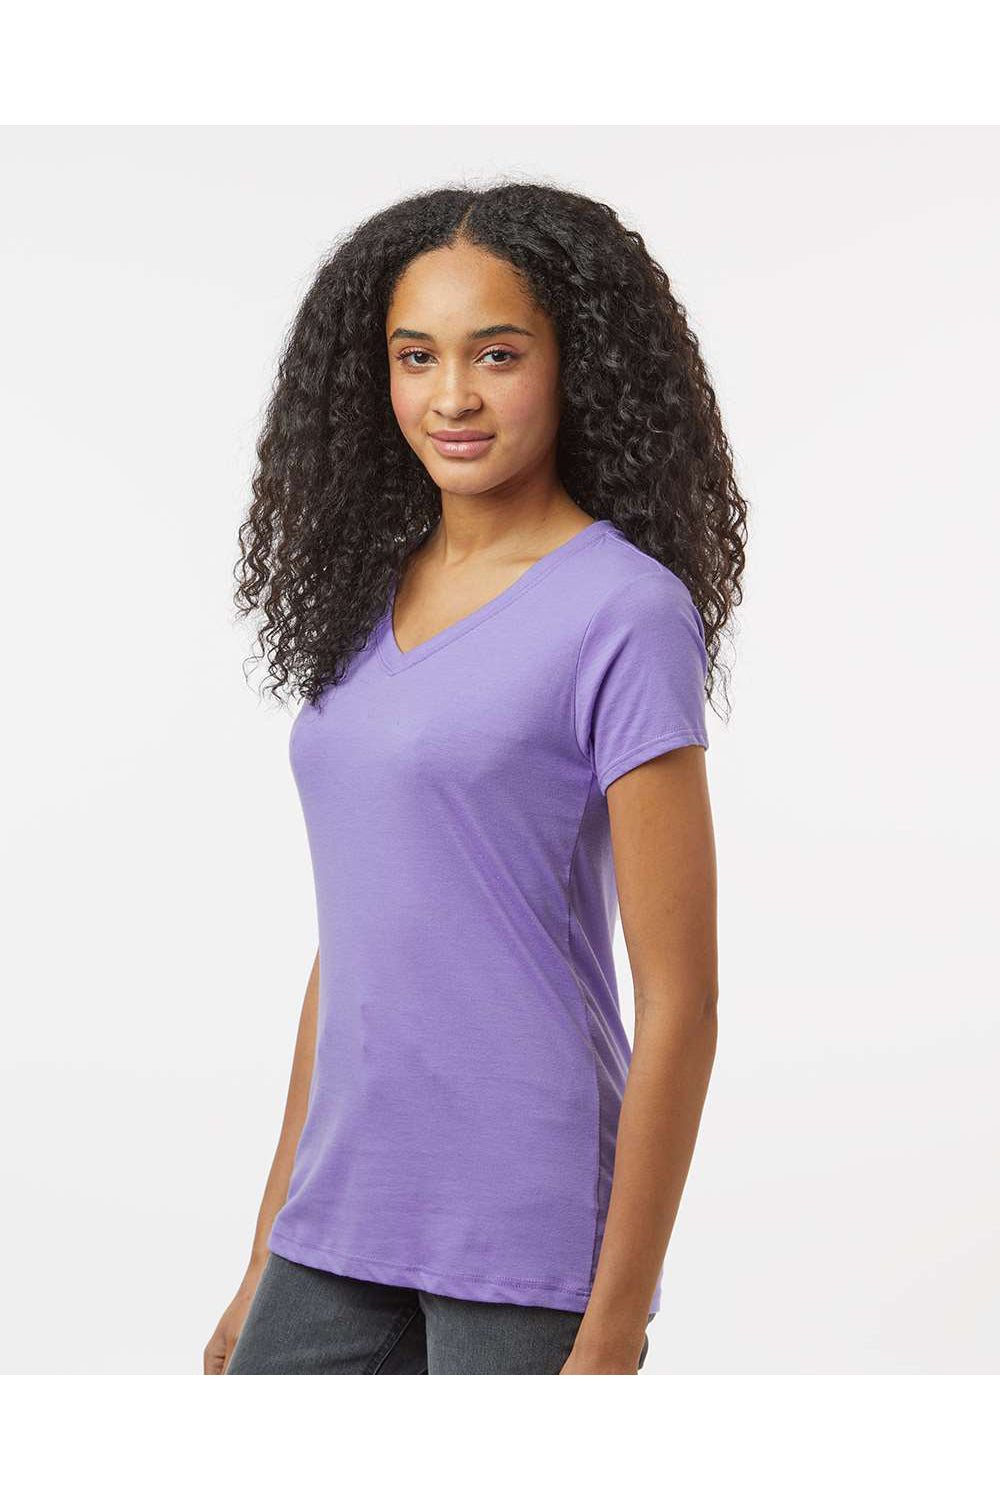 Kastlfel 2011 Womens RecycledSoft Short Sleeve V-Neck T-Shirt Violet Purple Model Side